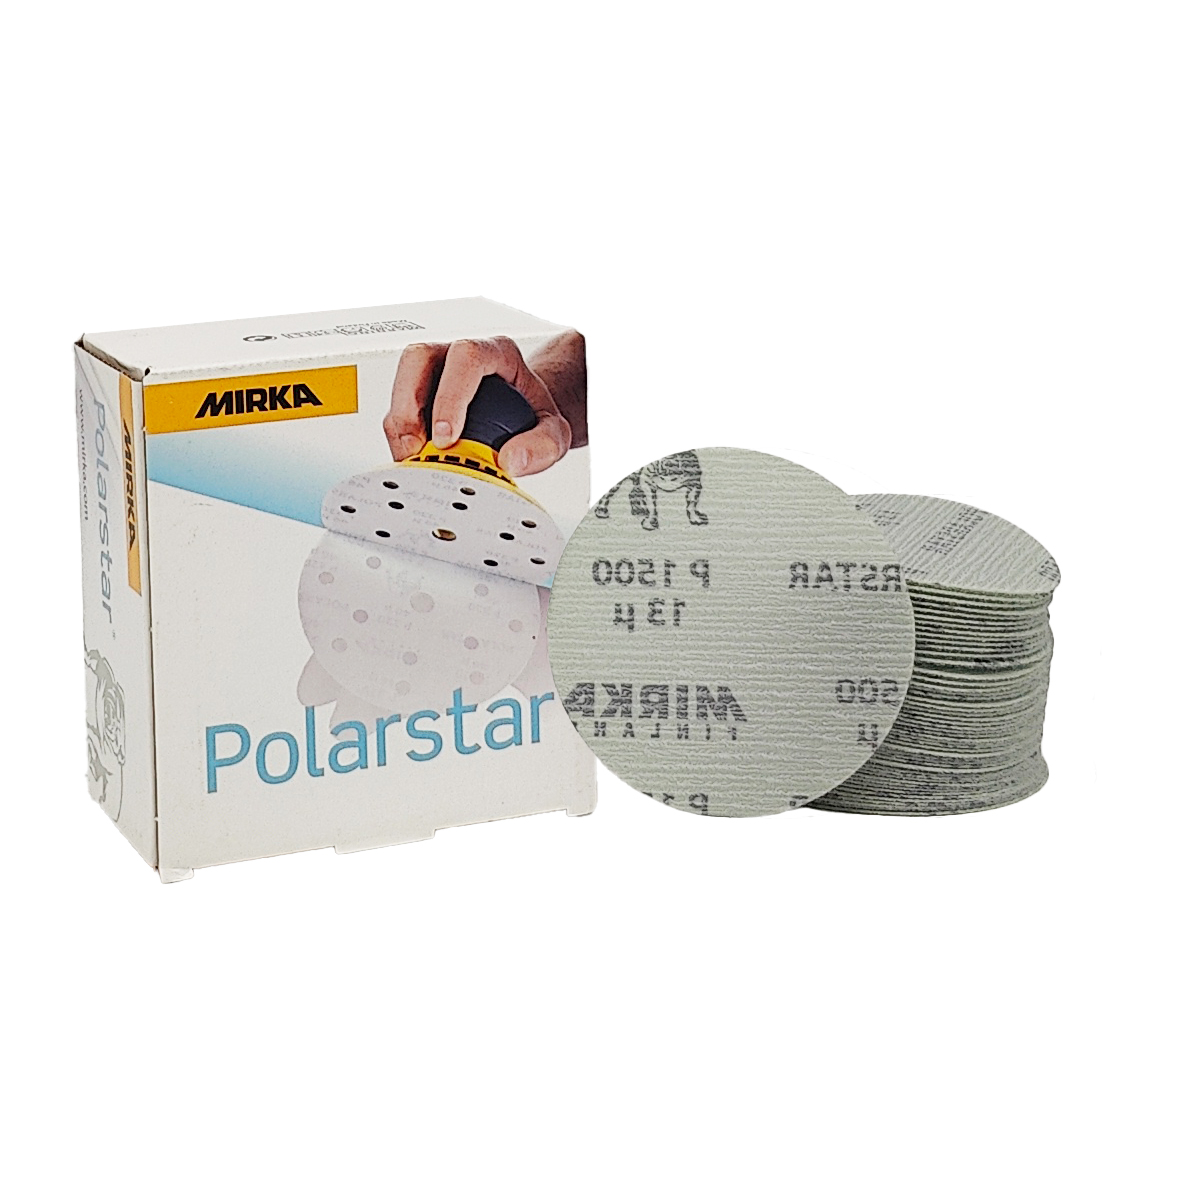 Abbildung Mirka Polarstar 77mm Verpackung und Scheiben als Stapel.